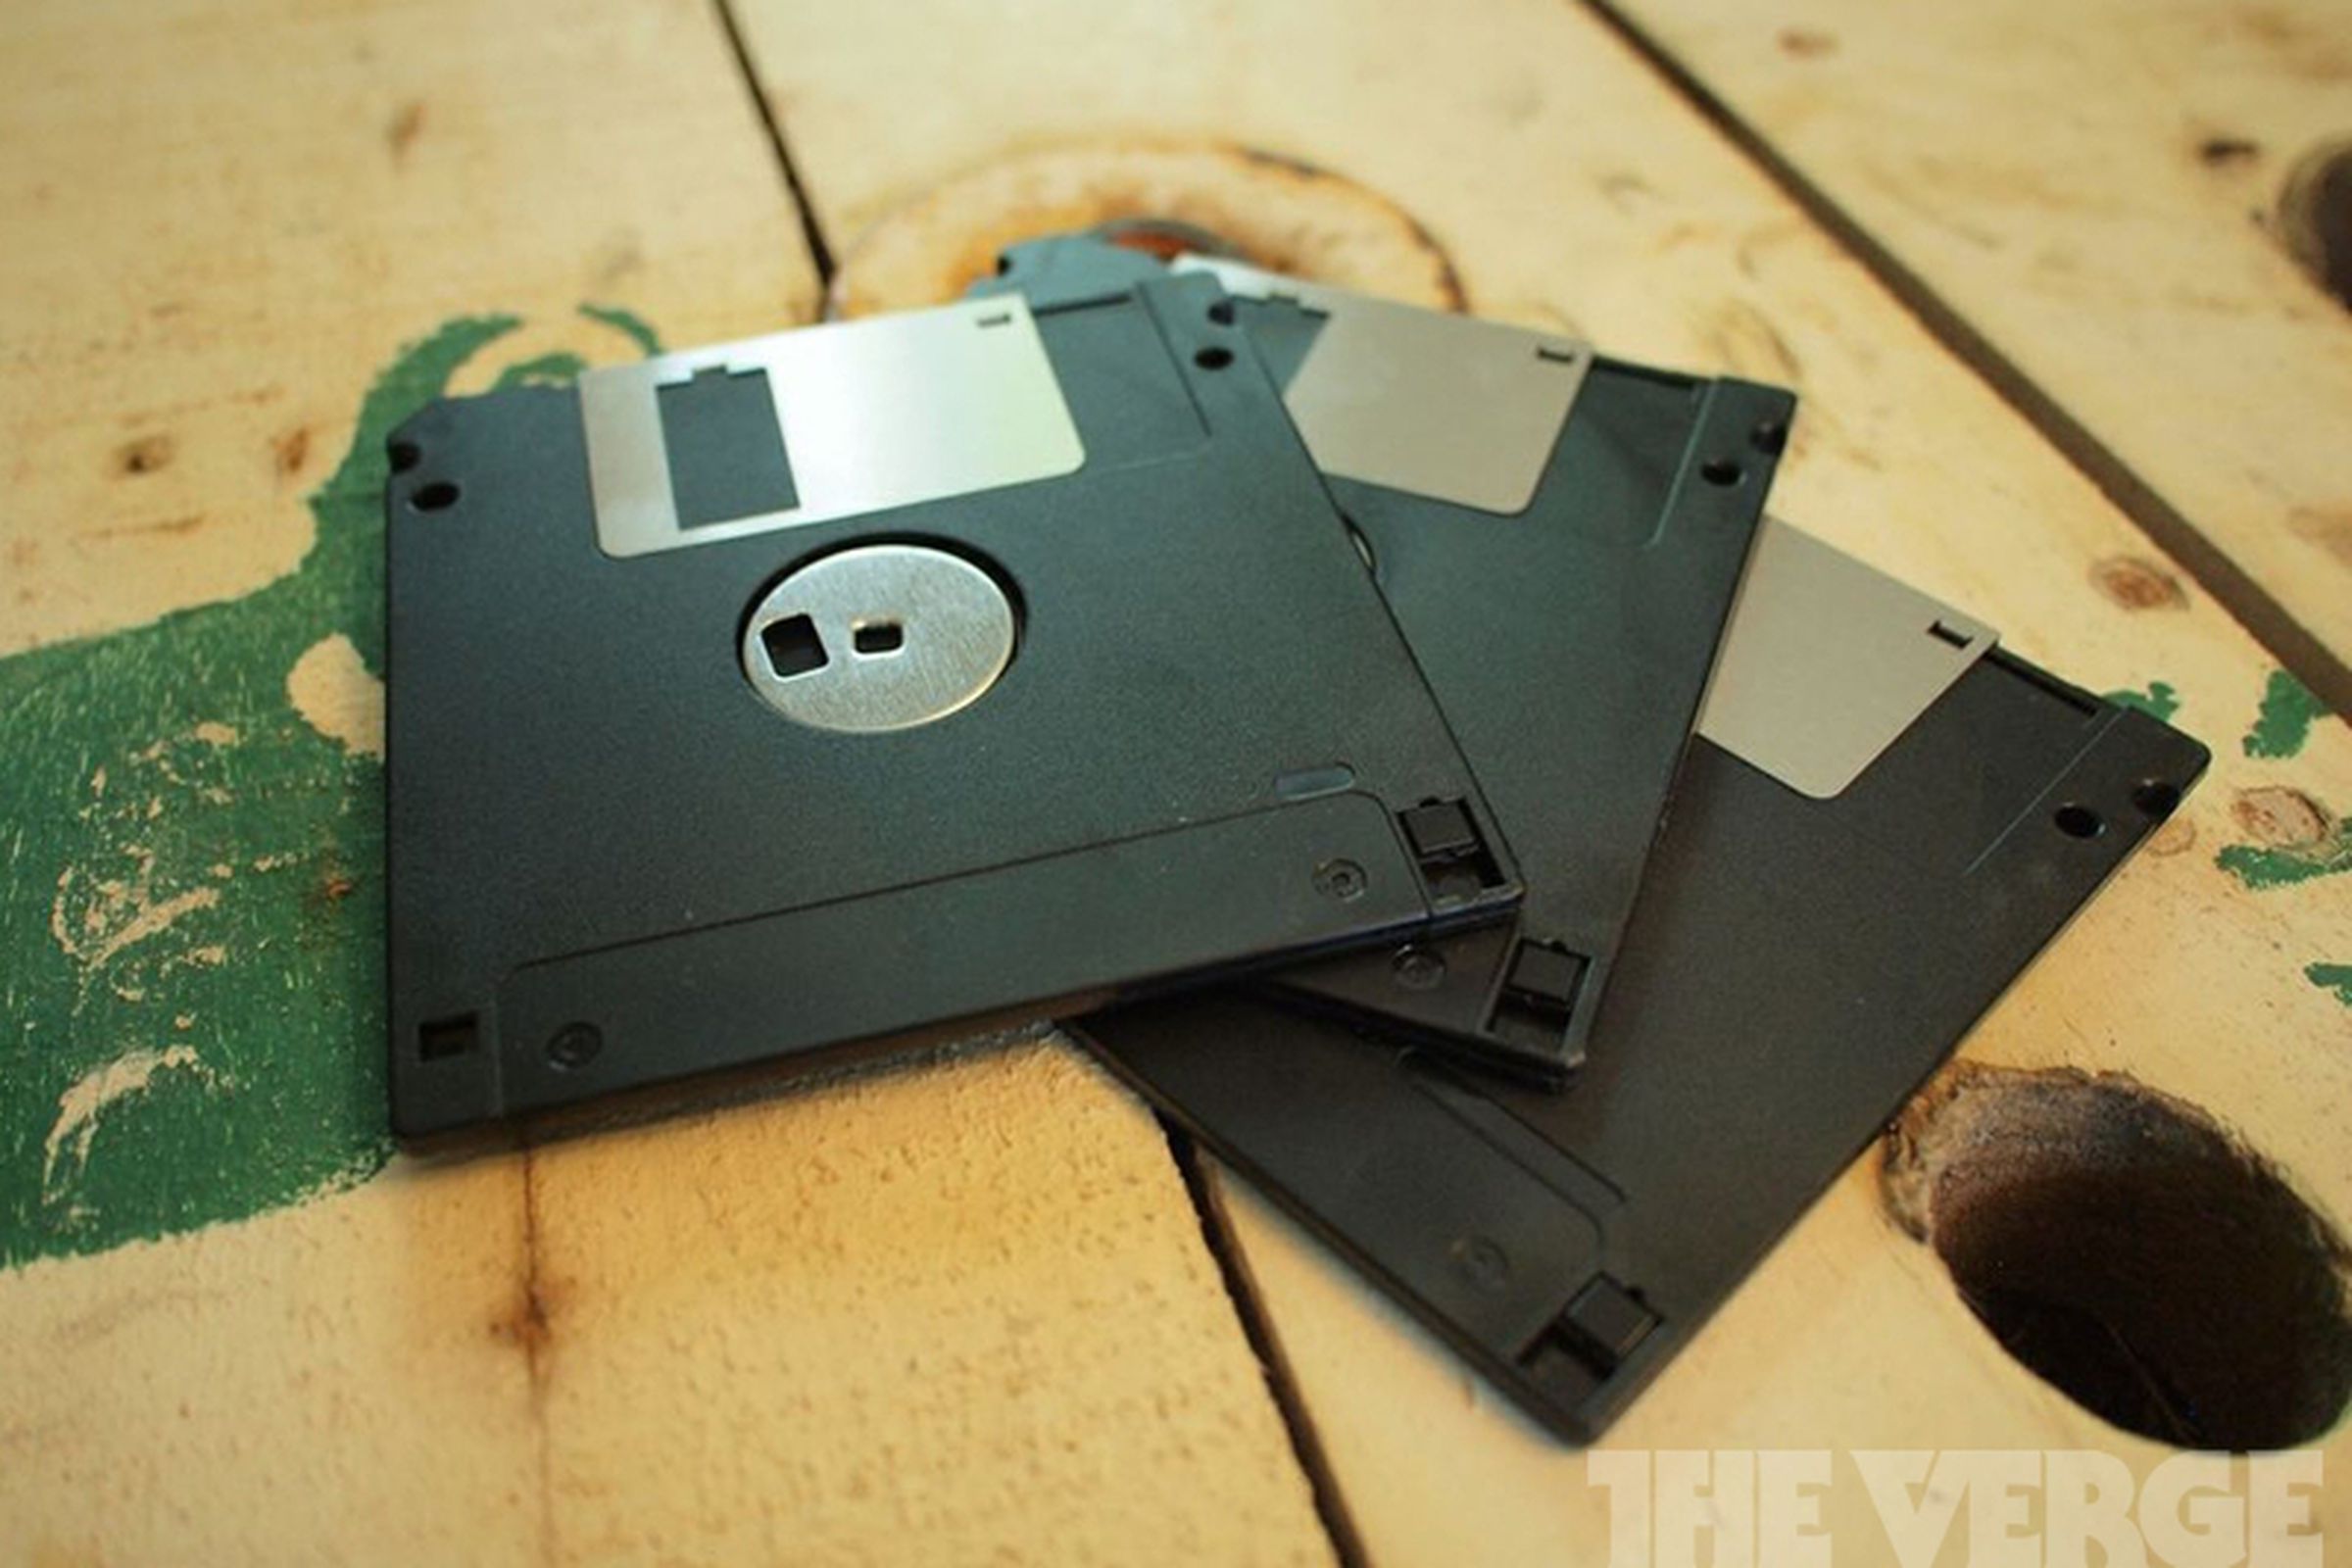 Floppy discs